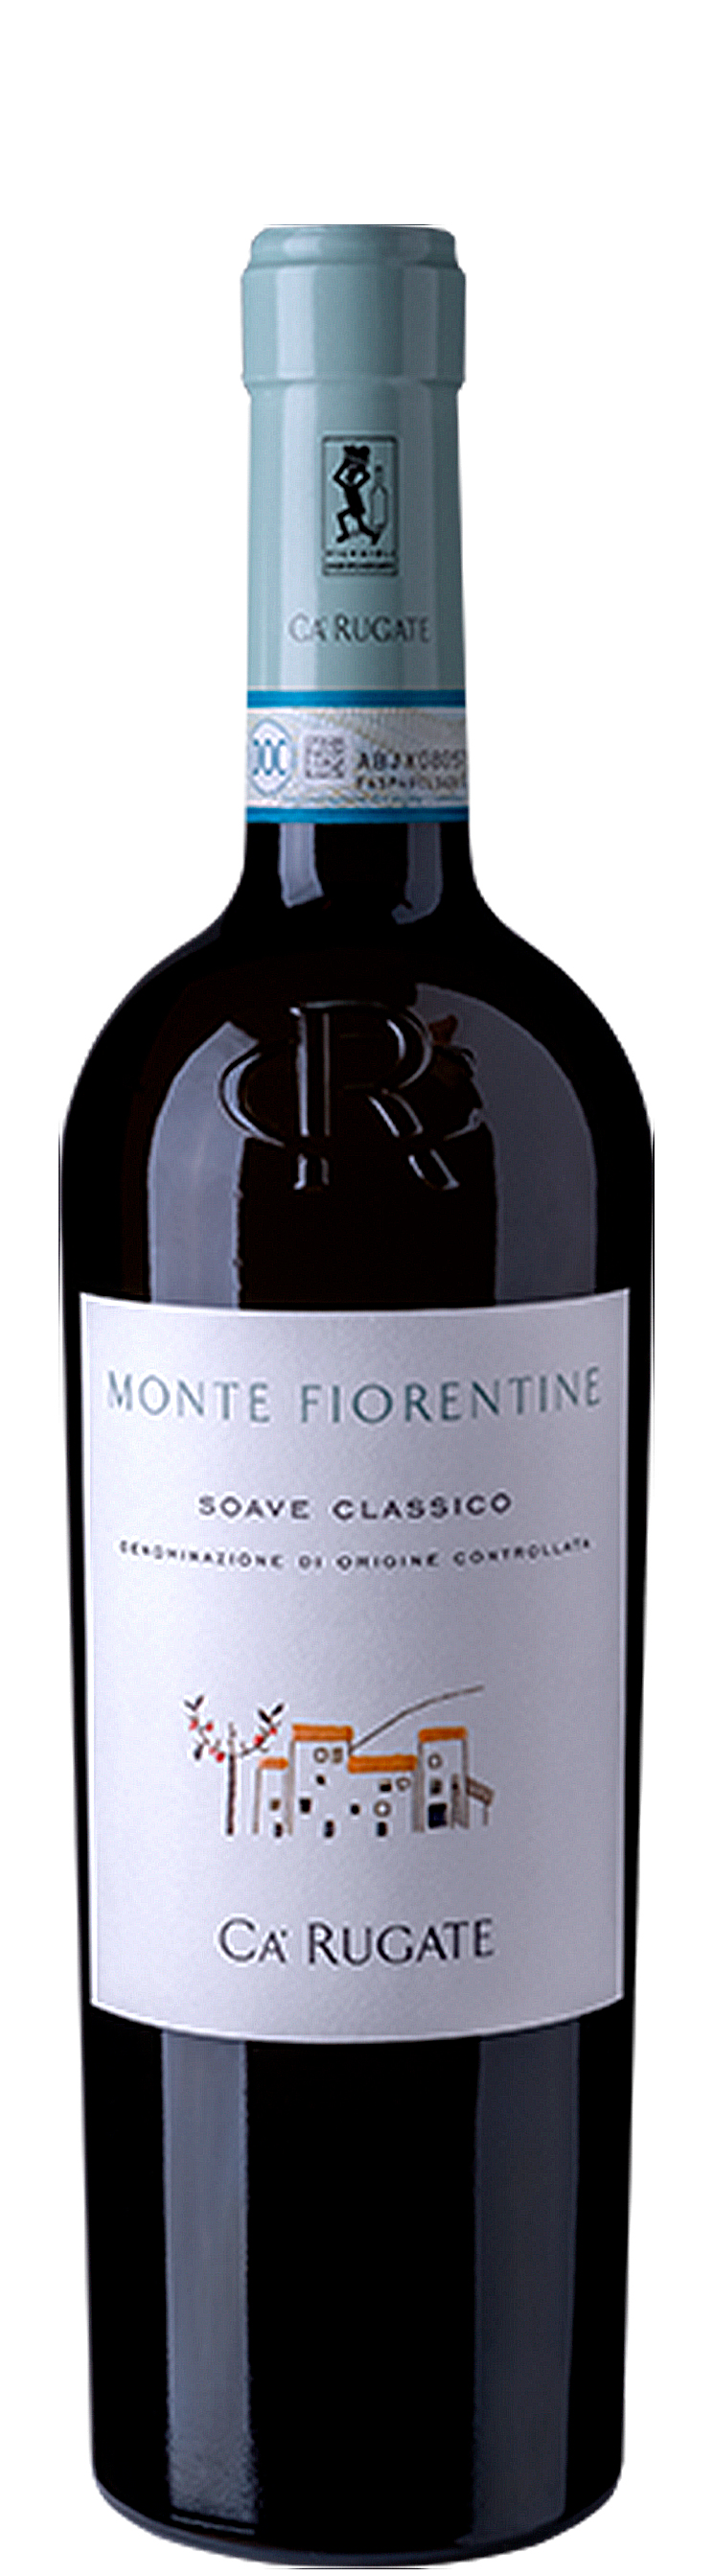 Soave Classico Monte Fiorentine 2020